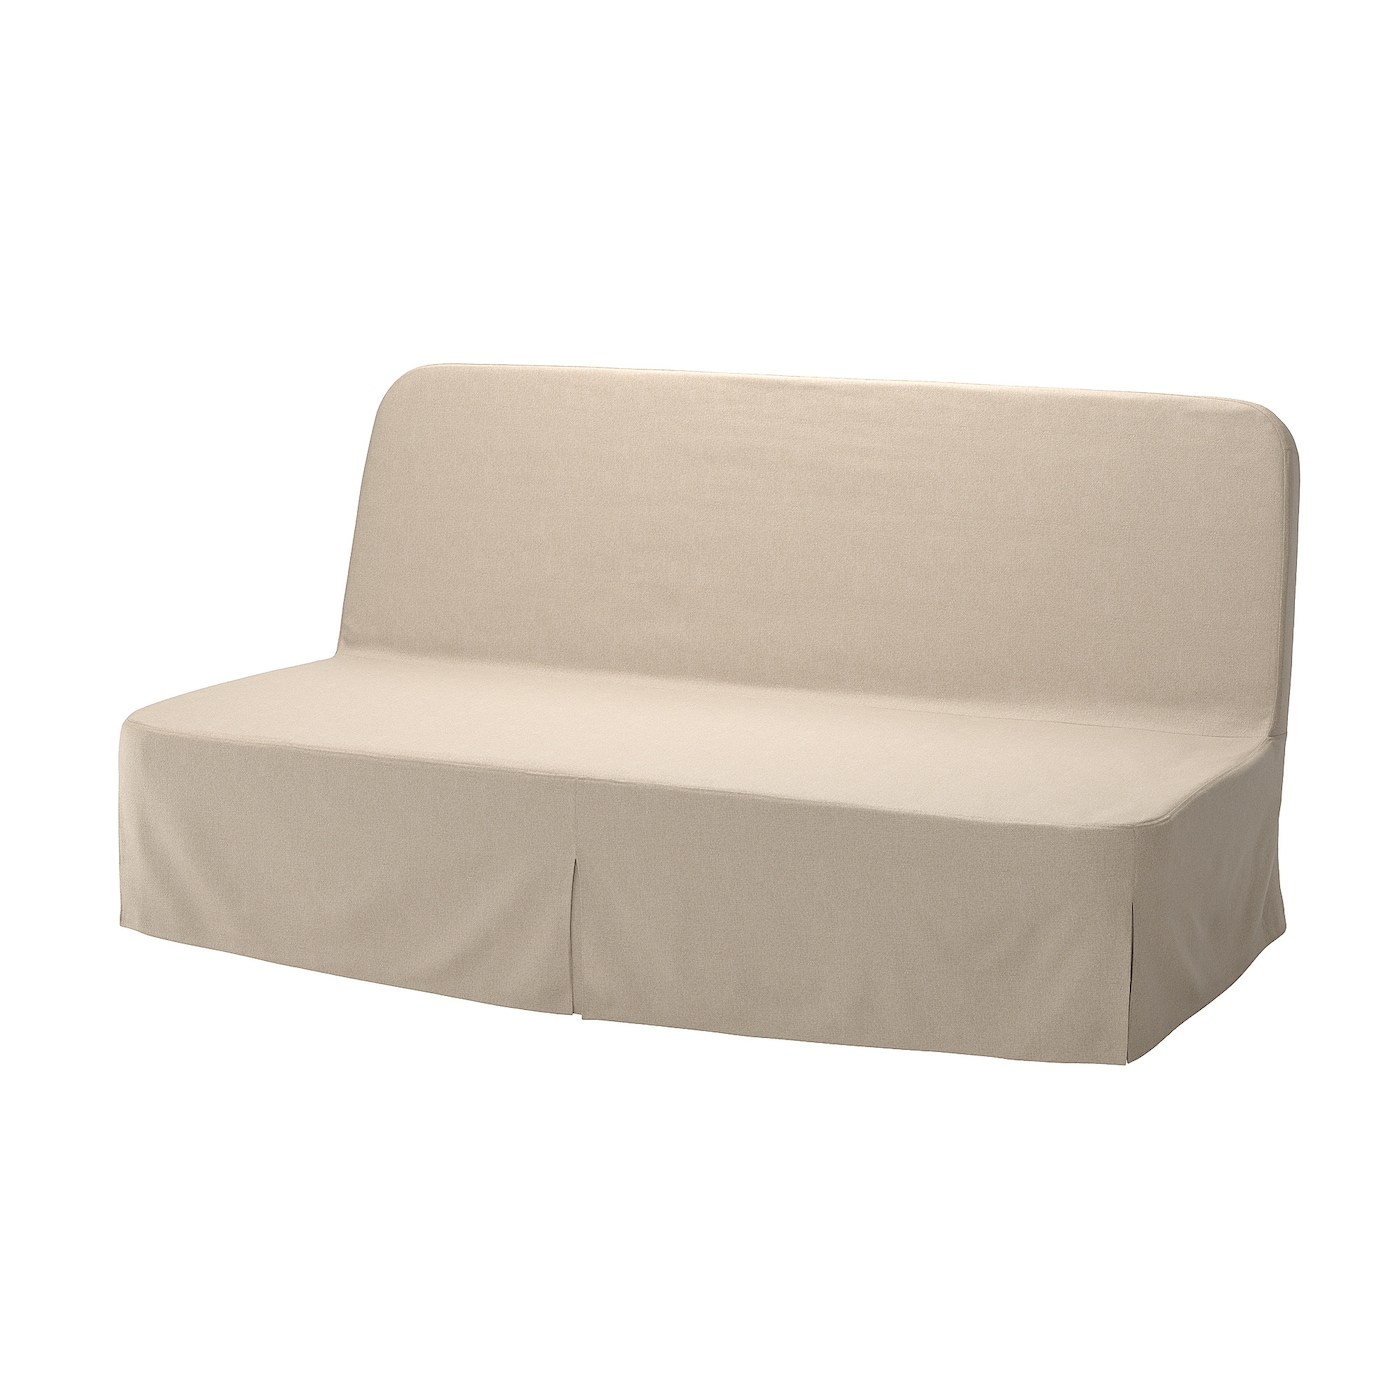 NYHAMN 3-местный диван-кровать, поролоновый матрас в комплекте/Нагген бежевый IKEA складная двухцелевая спинка плавающий ряд с сетчатым гамаком водный развлекательный шезлонг плавающая кровать диван